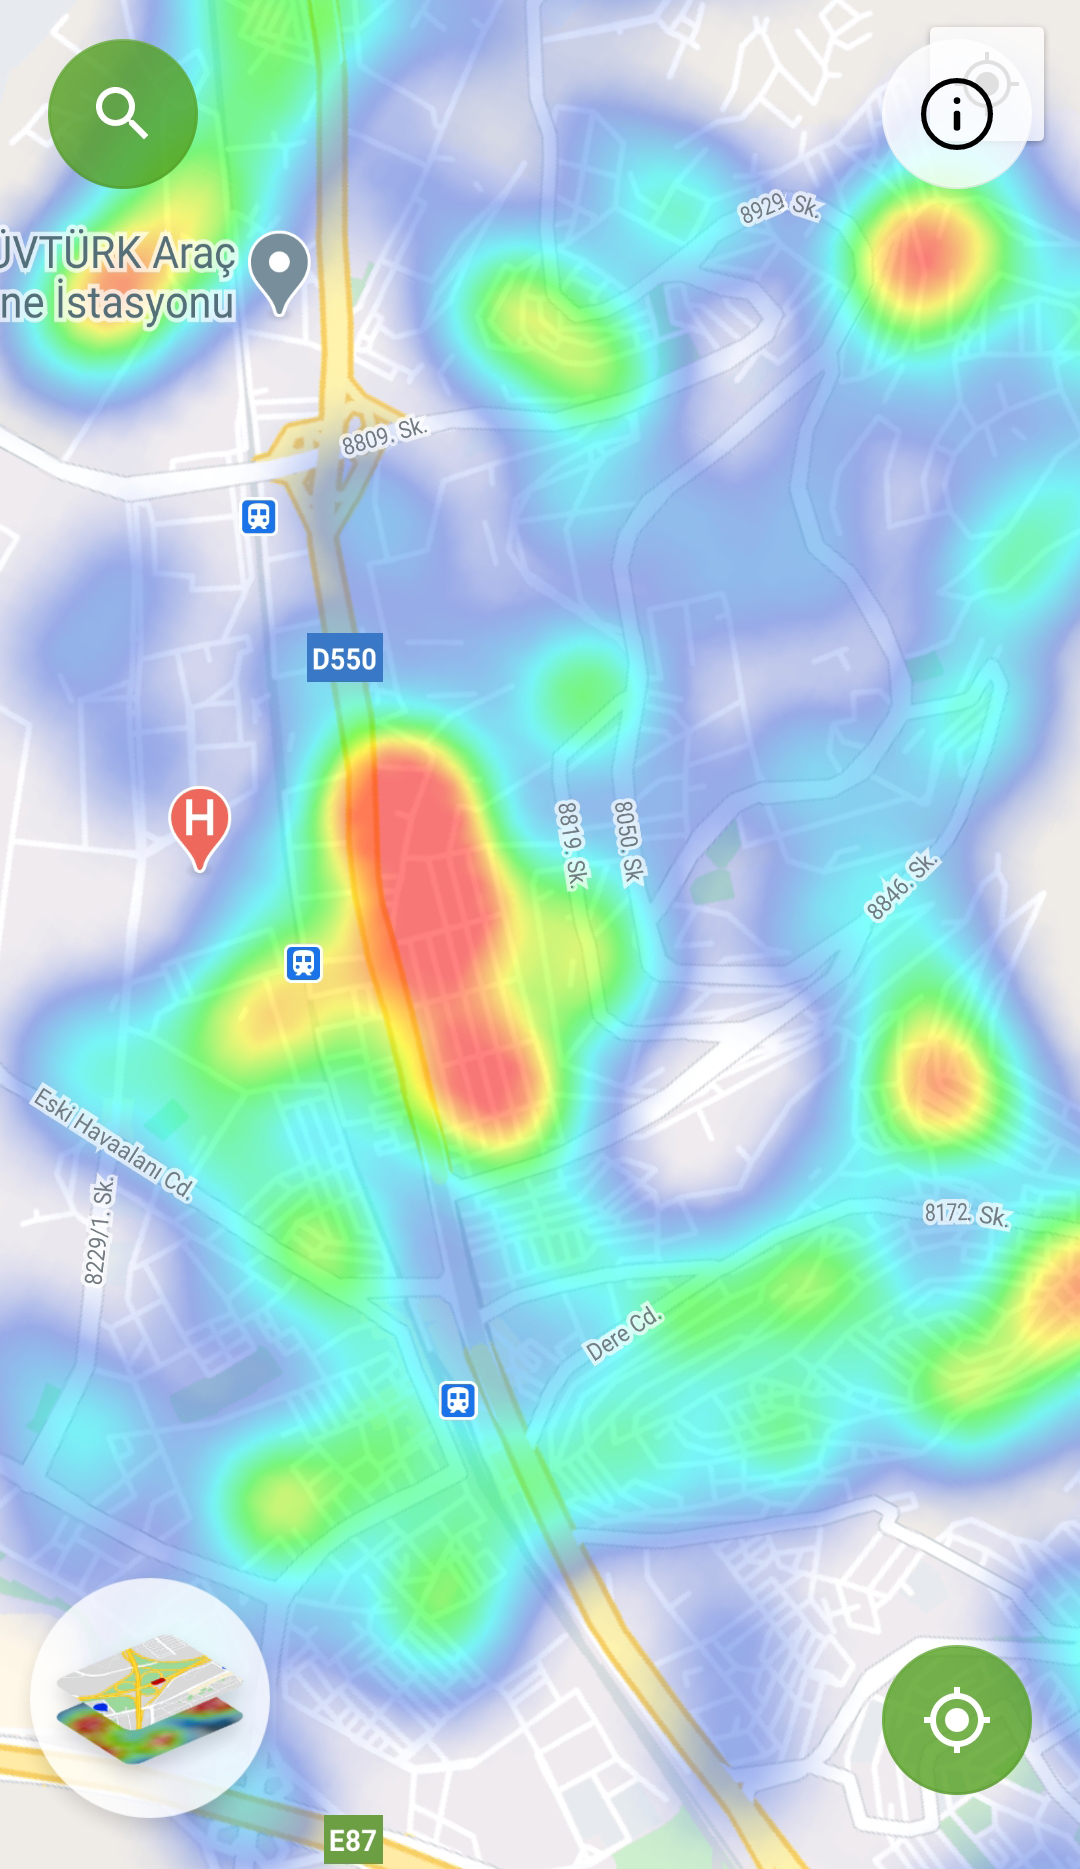 İzmir'in koronavirüs haritası kırmızıya boyandı